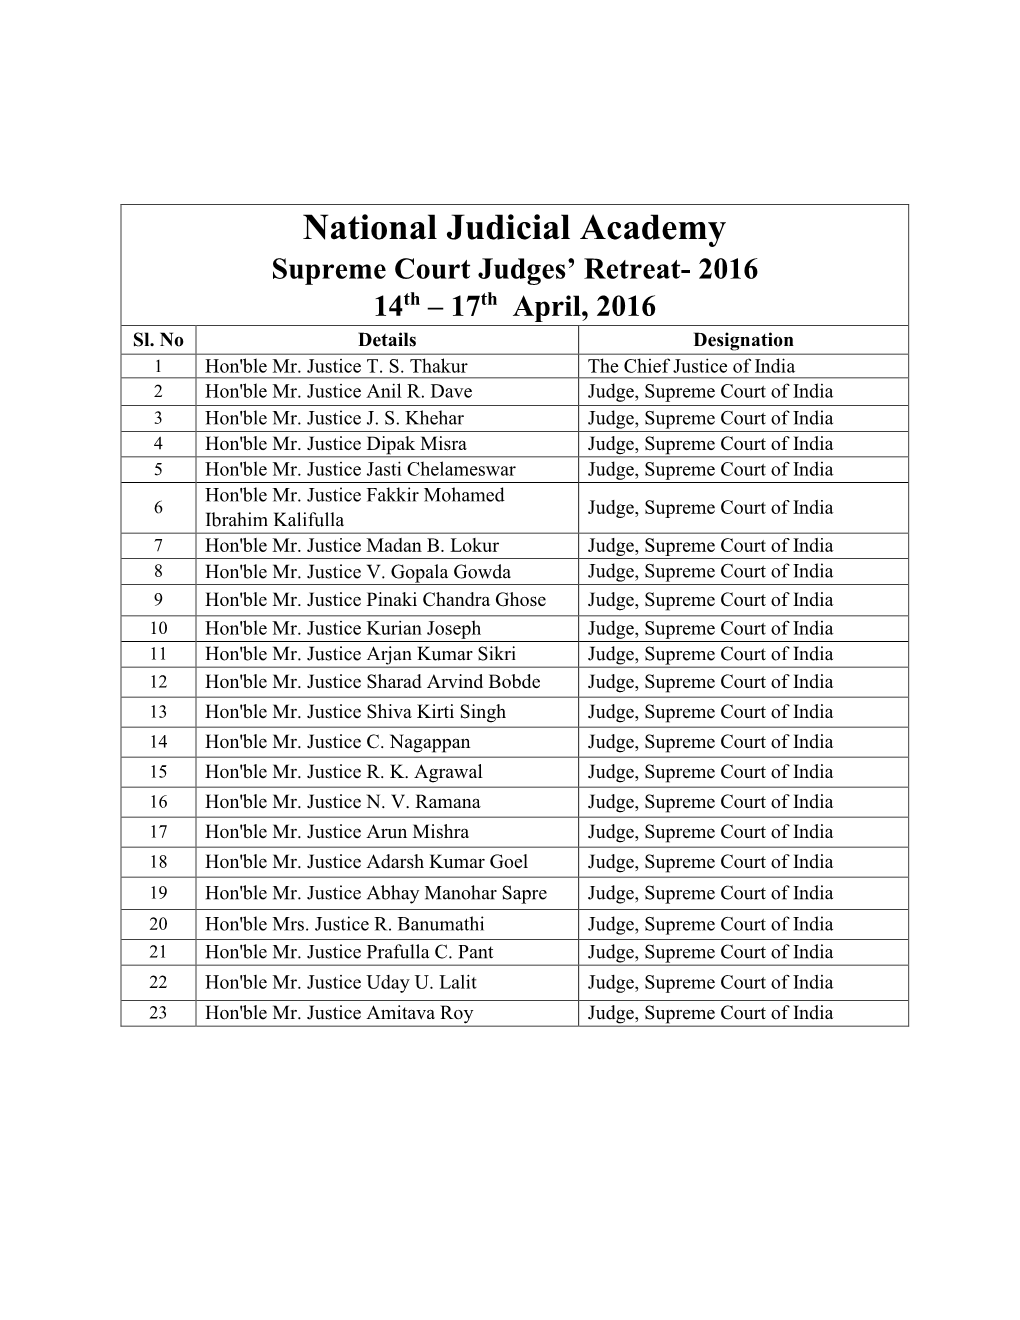 National Judicial Academy Supreme Court Judges' Retreat